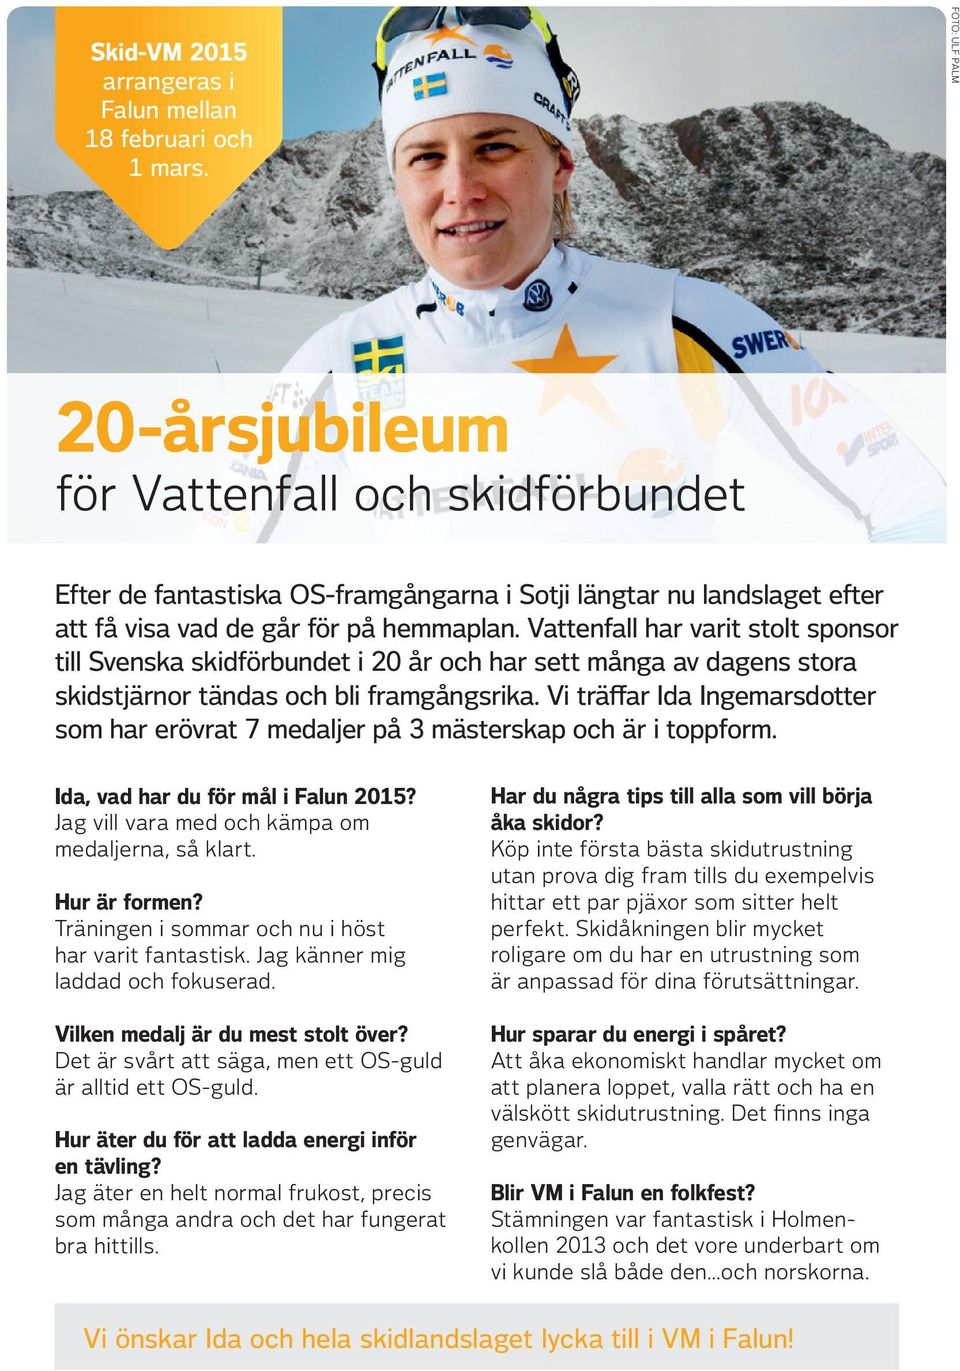 Vattenfall har varit stolt sponsor till Svenska skidförbundet i 20 år och har sett många av dagens stora skidstjärnor tändas och bli framgångsrika.